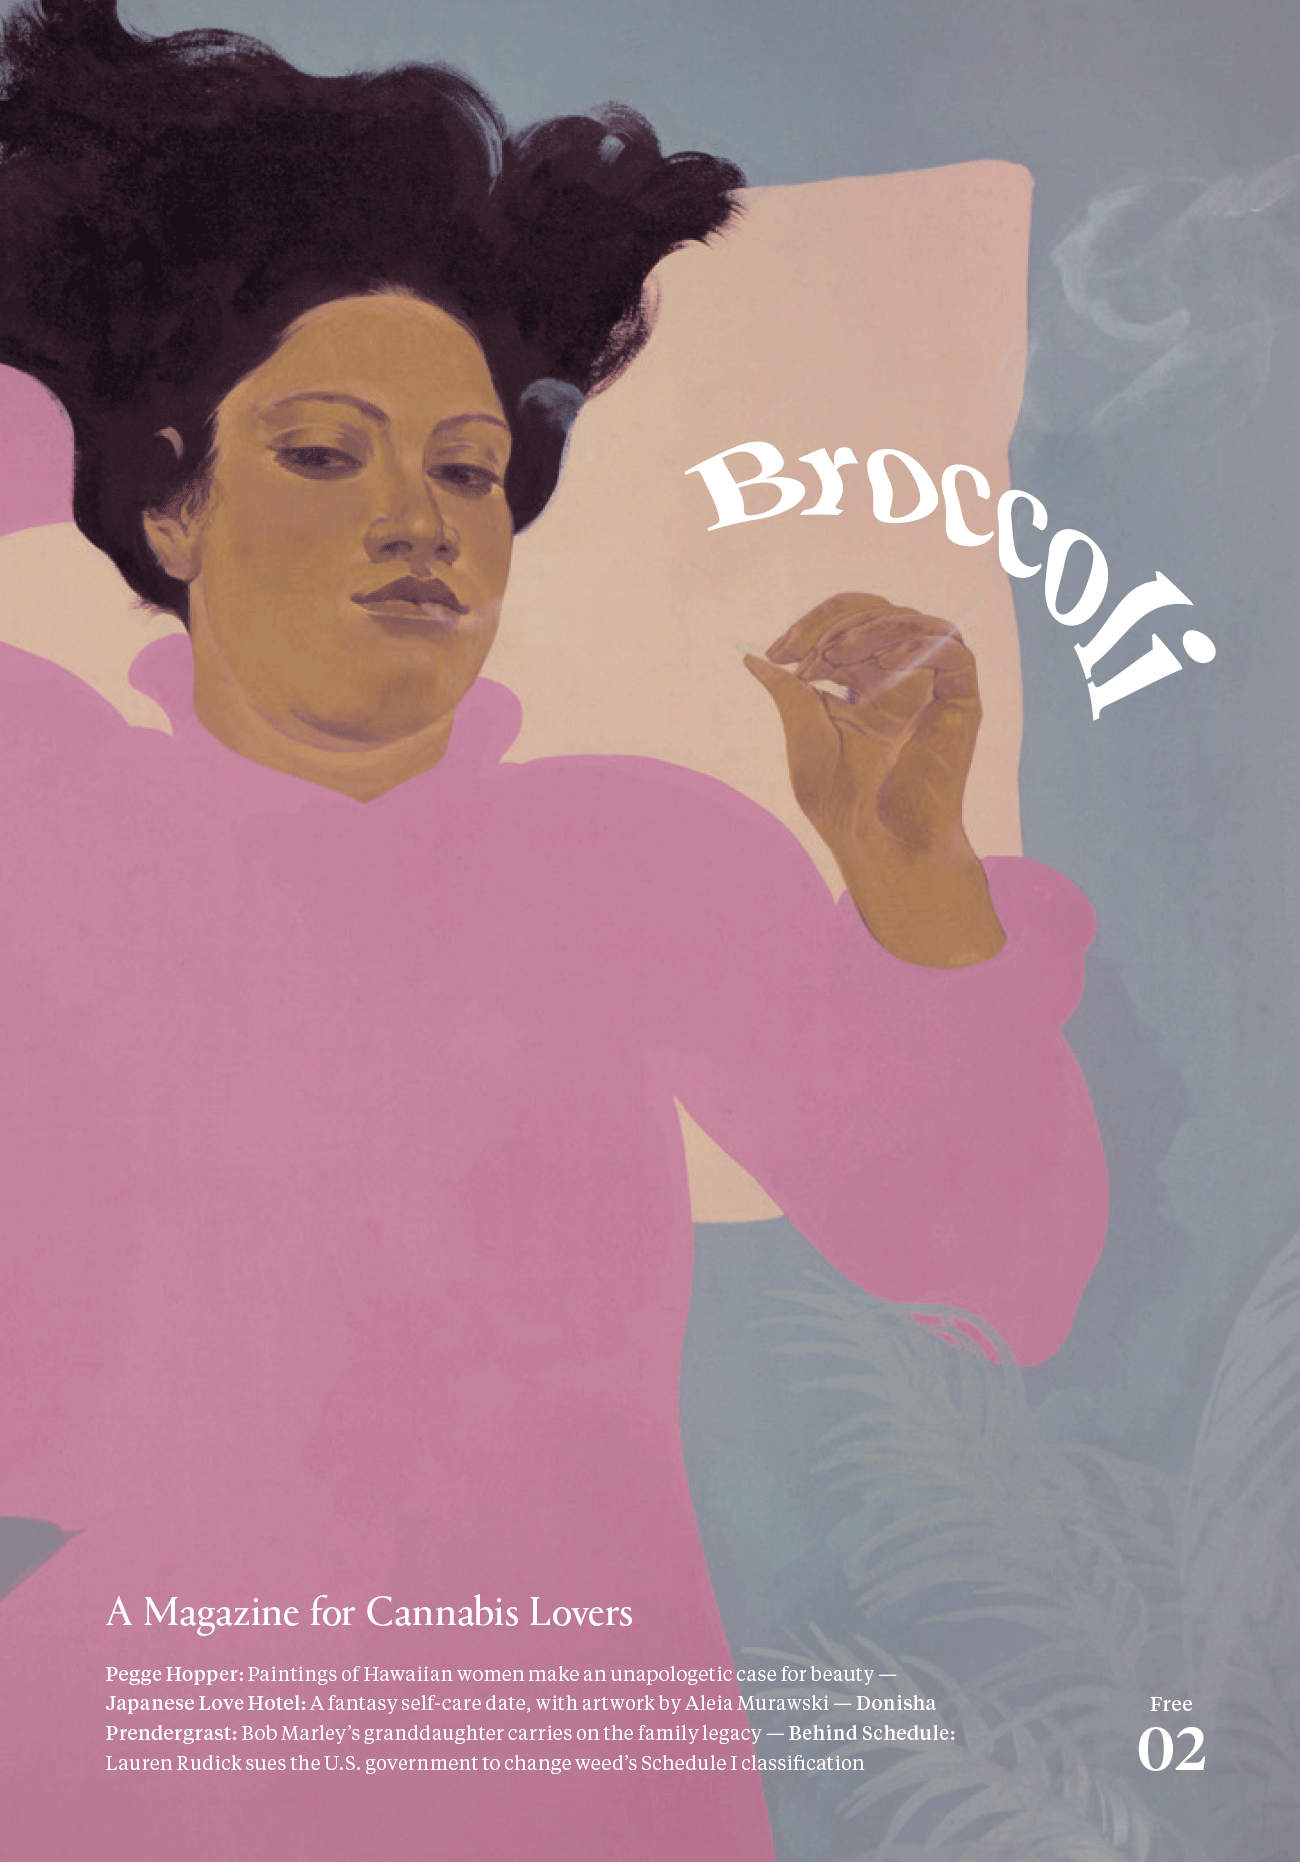 Auf dem Cover des Magazins »Broccoli« ist die Illustration einer Frau zu sehen, die ein rosa Kleid trägt und auf einem aprikosefarbenen Kissen liegt, wo sie eine Tüte raucht.